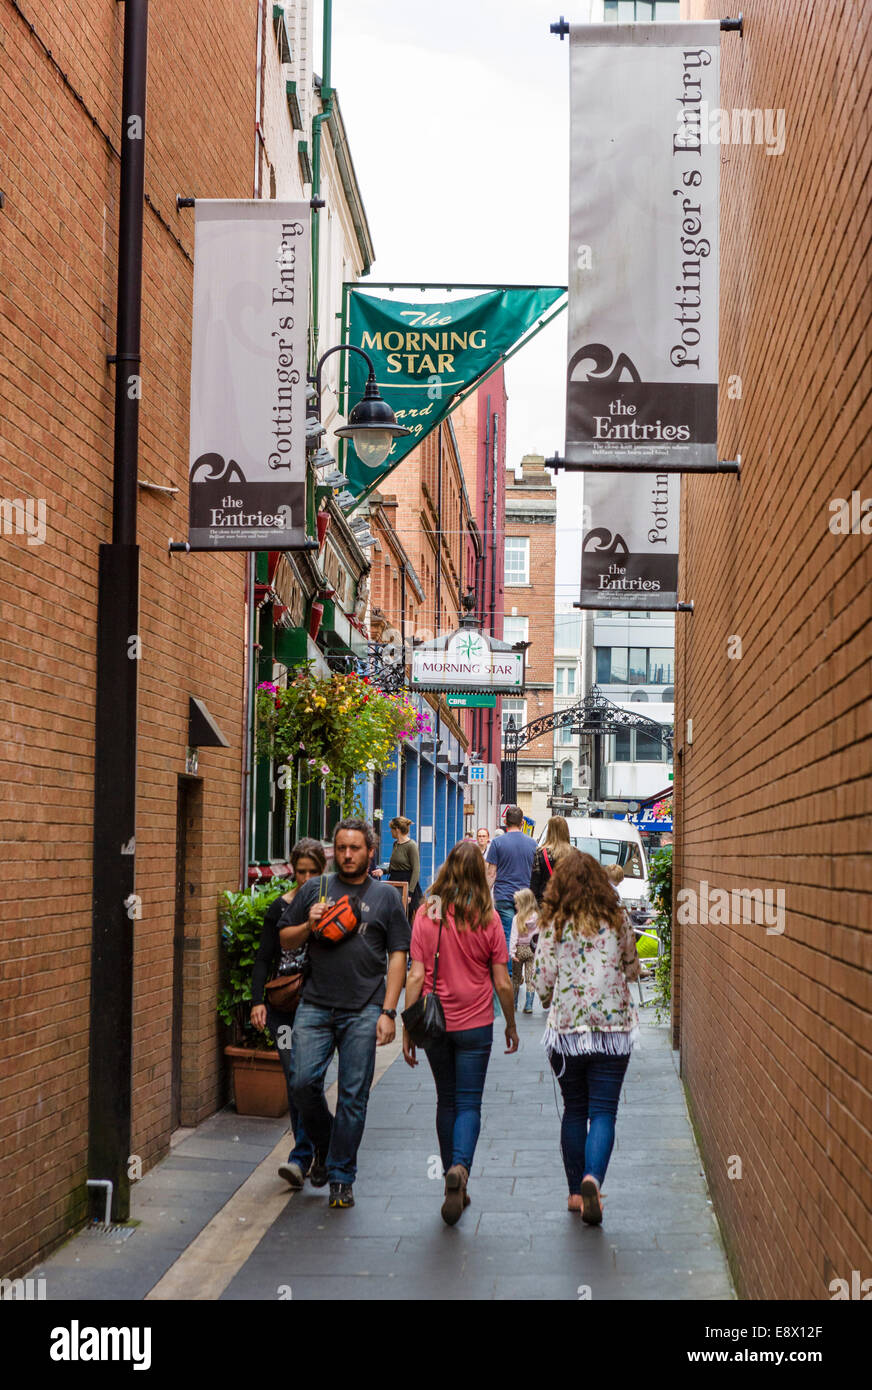 L'entrée de Pottinger, l'un de l'historique des passages étroits entre High Street et St Ann, Belfast, Irlande du Nord, Royaume-Uni Banque D'Images